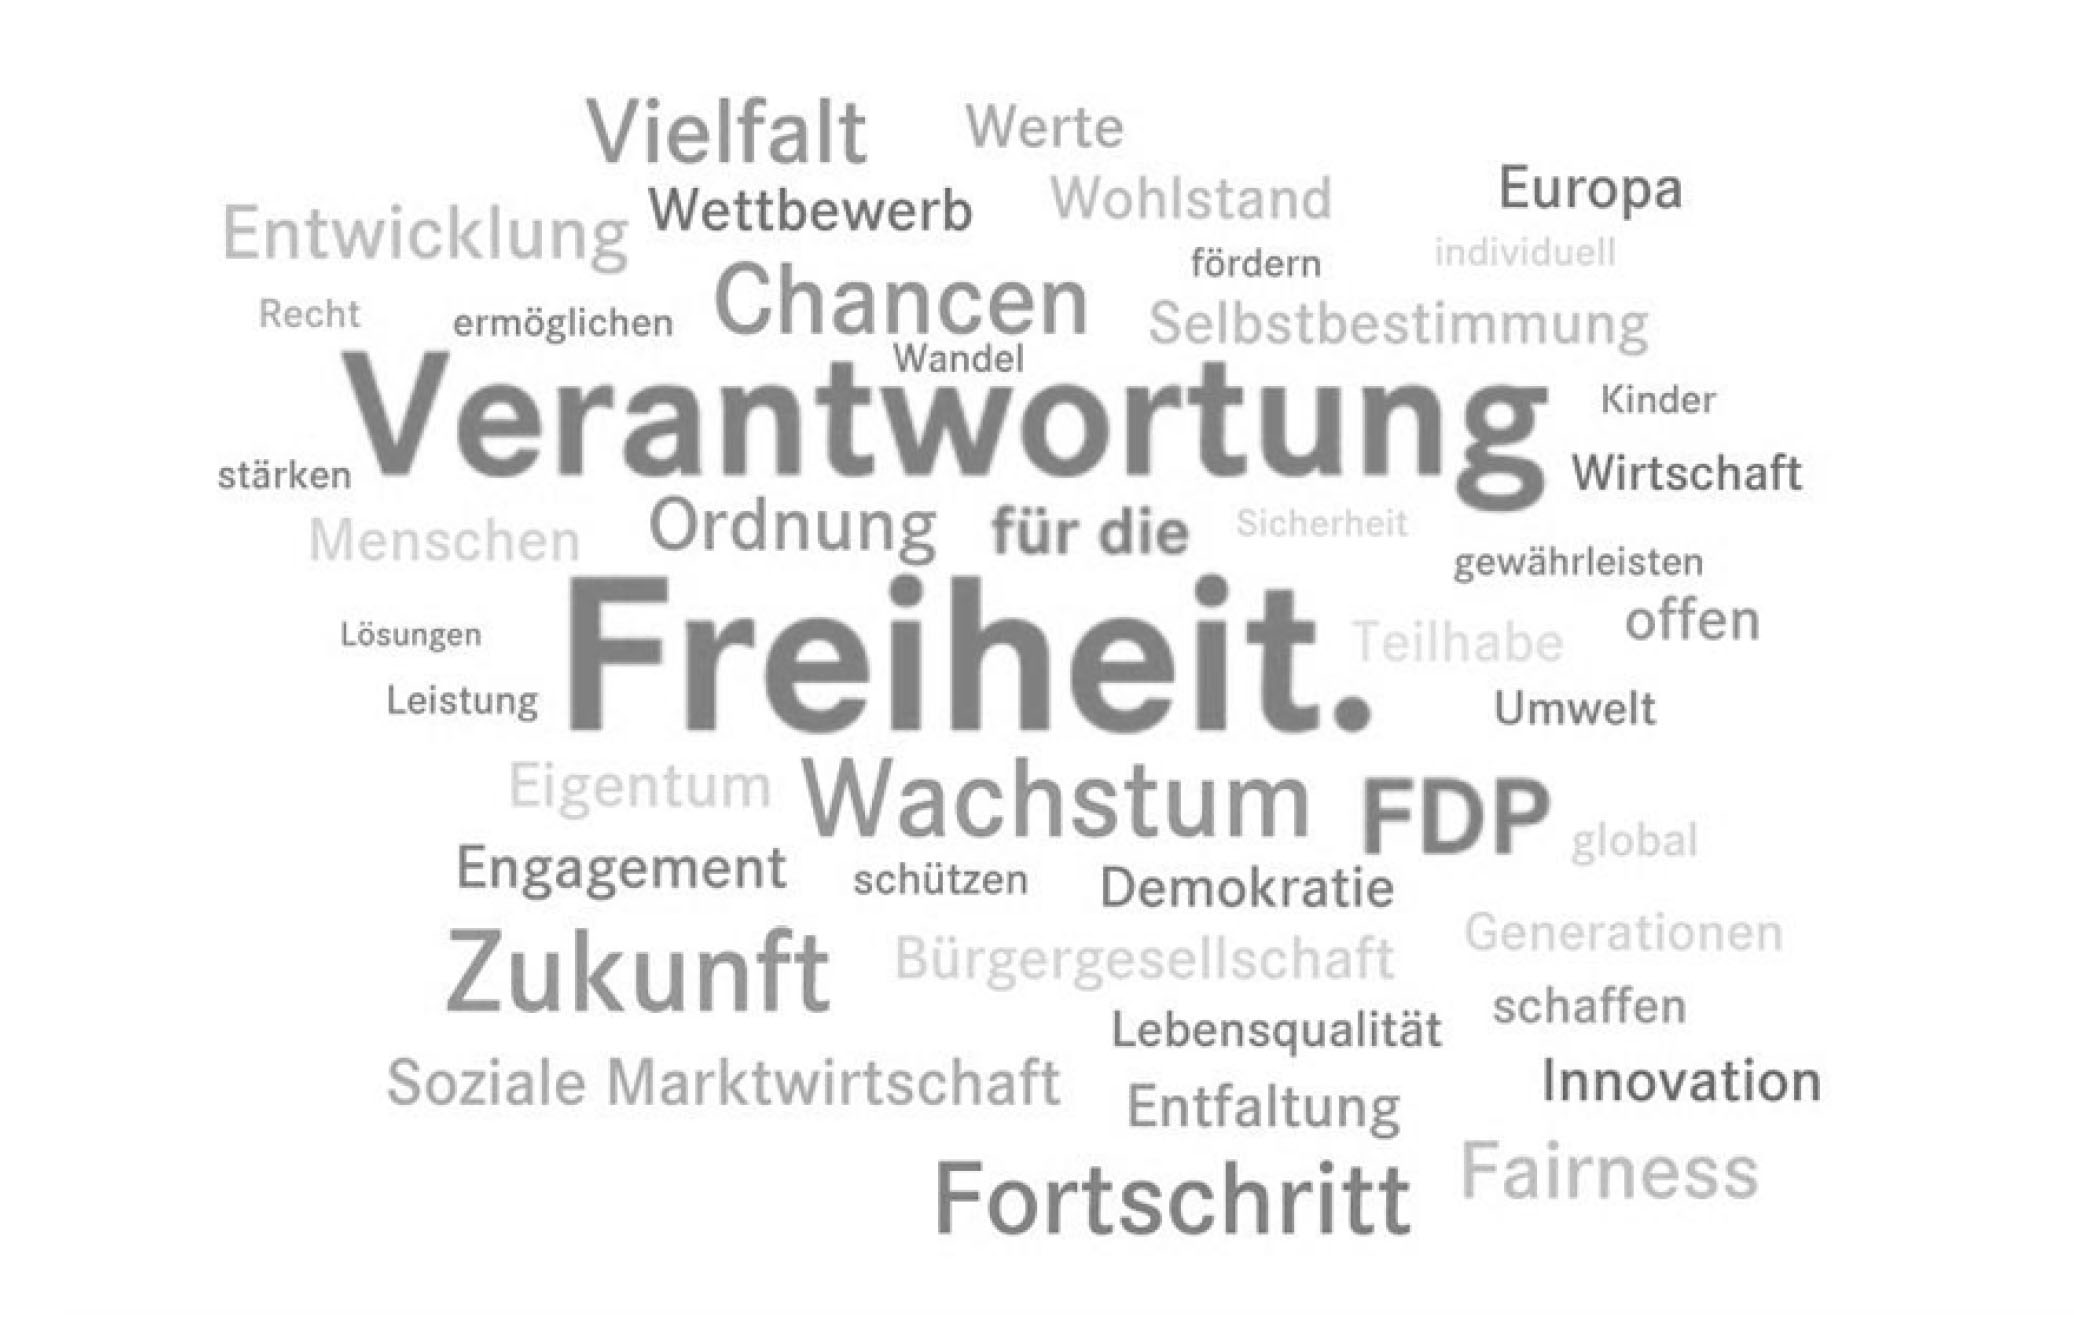 Tagcloud Karlsruher Freiheitsthesen - Freiheit - Veranwortung - Wachstum - FDP